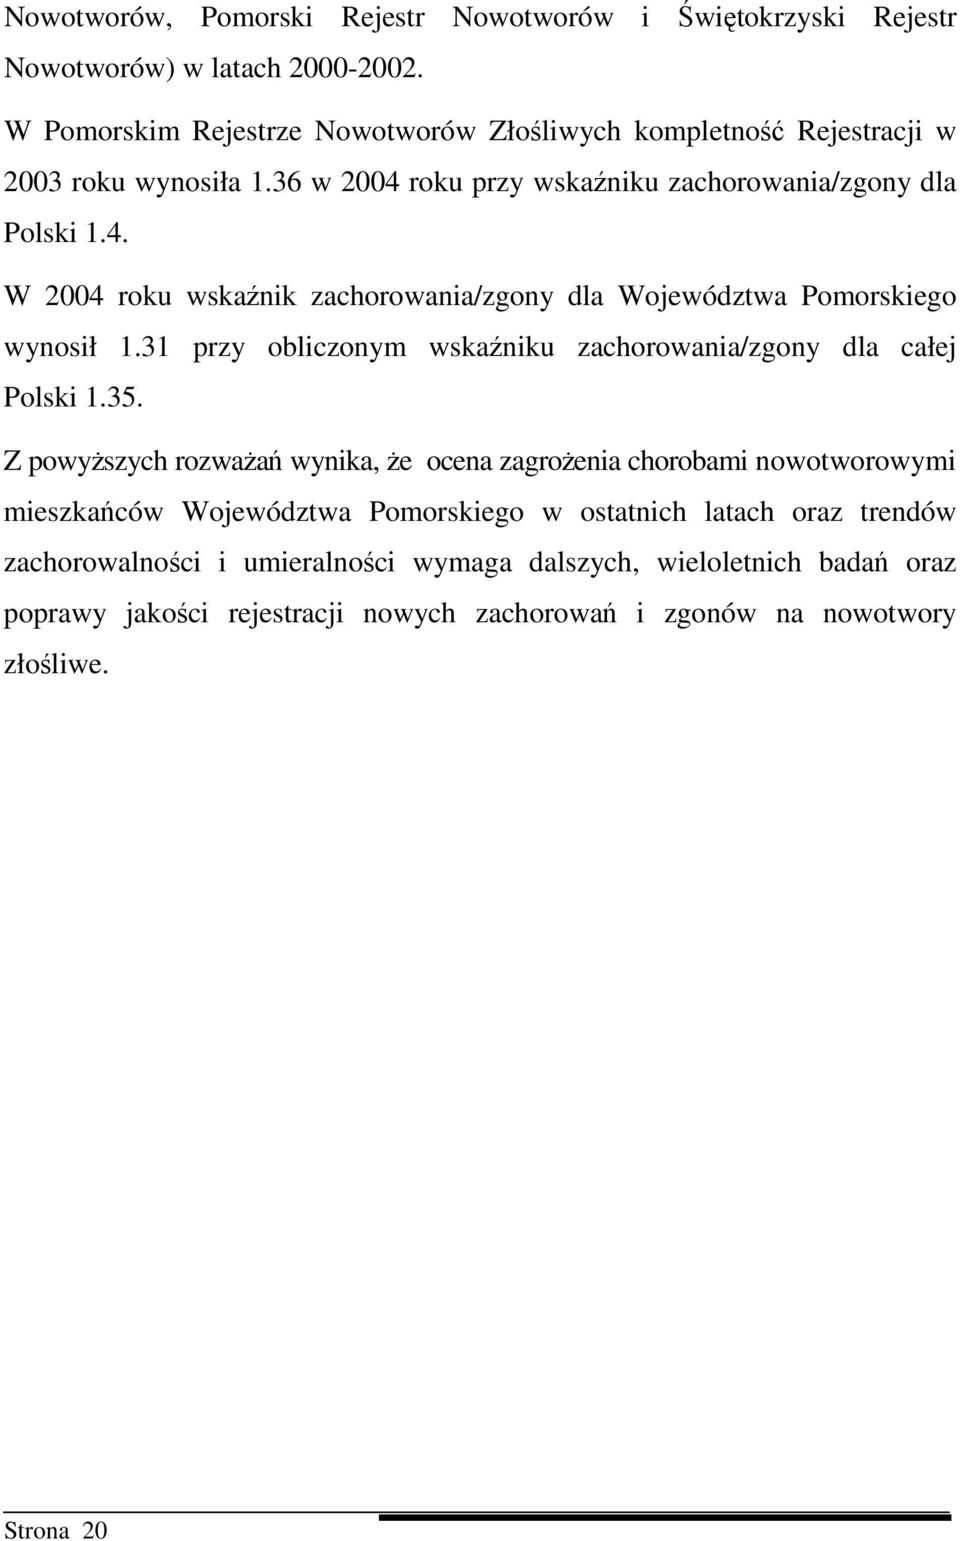 roku przy wskaźniku zachorowania/zgony dla Polski 1.4. W 2004 roku wskaźnik zachorowania/zgony dla Województwa Pomorskiego wynosił 1.